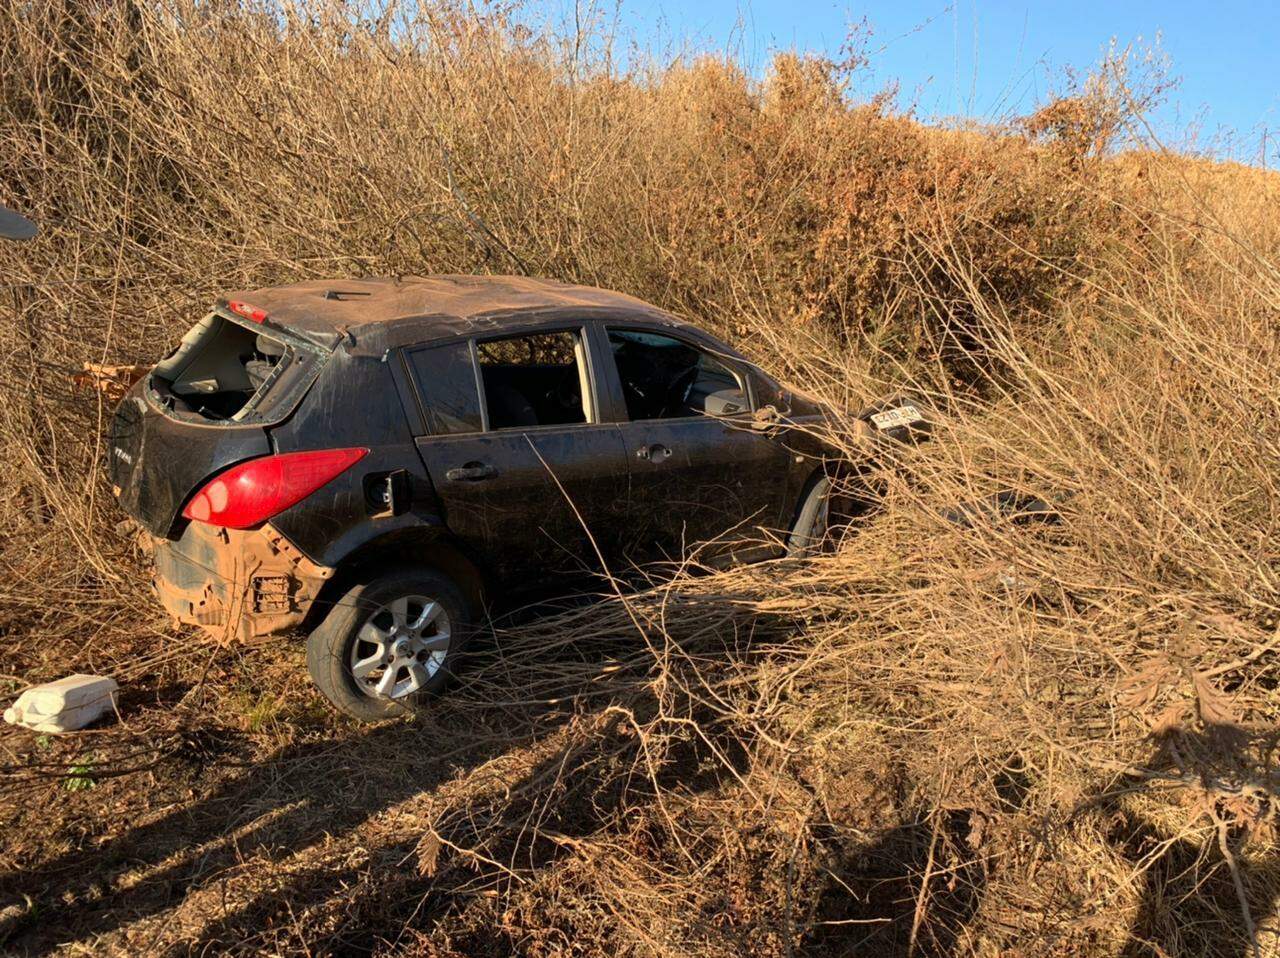 Veículo foi encontrado na região de Maracaju (Foto: Robertinho / Maracaju Speed)